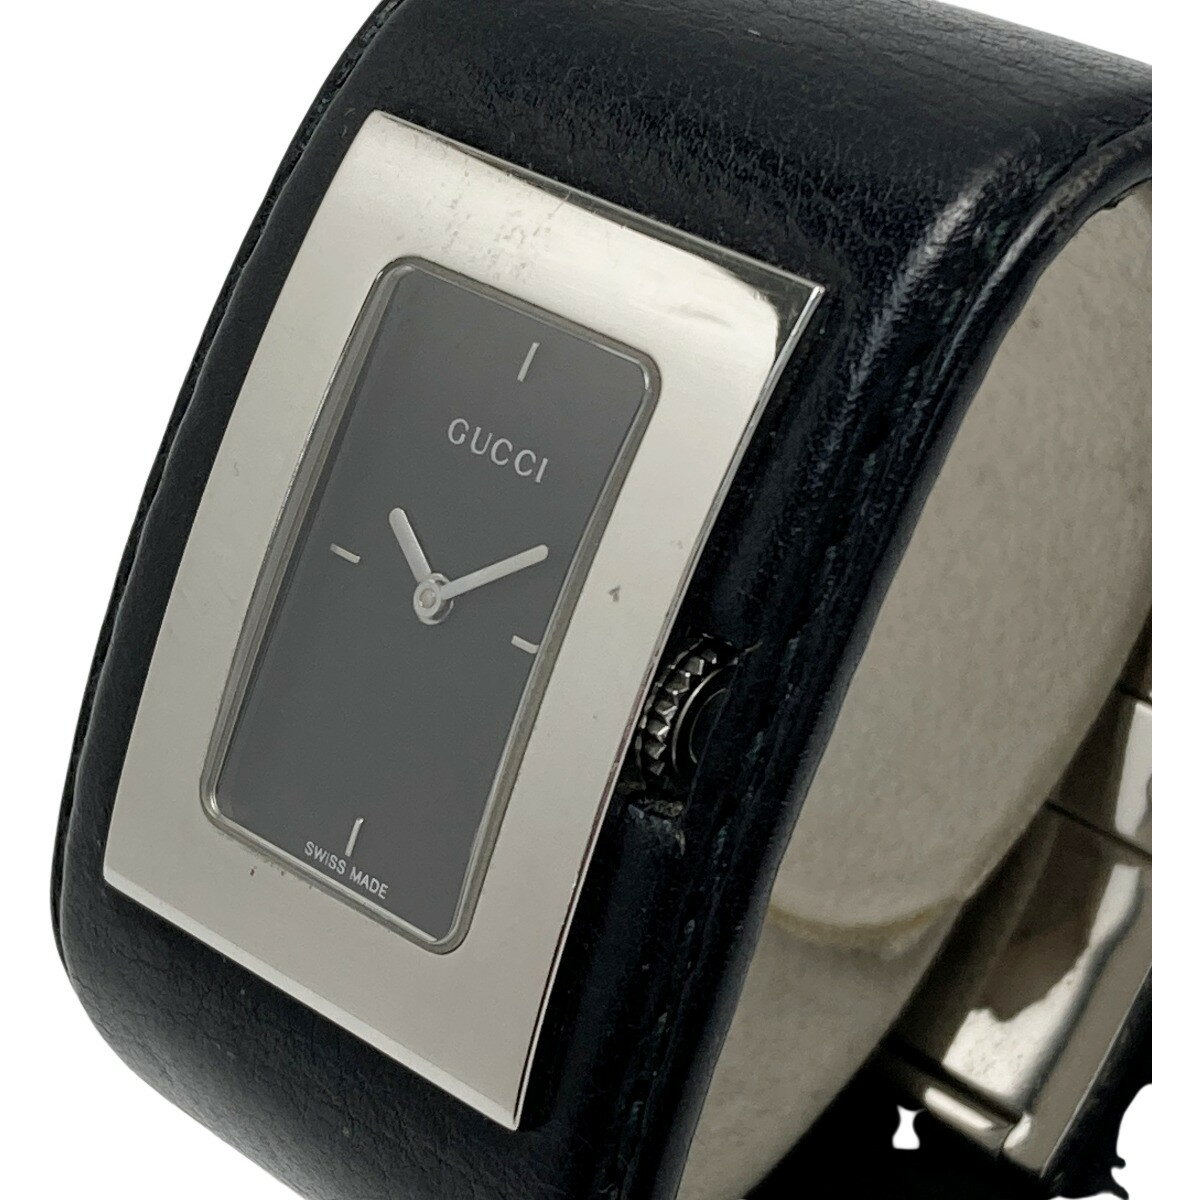 ☆☆【中古】GUCCI グッチ バングルウォッチ レザー 7800L ブラック クォーツ レディース 腕時計 Bランク